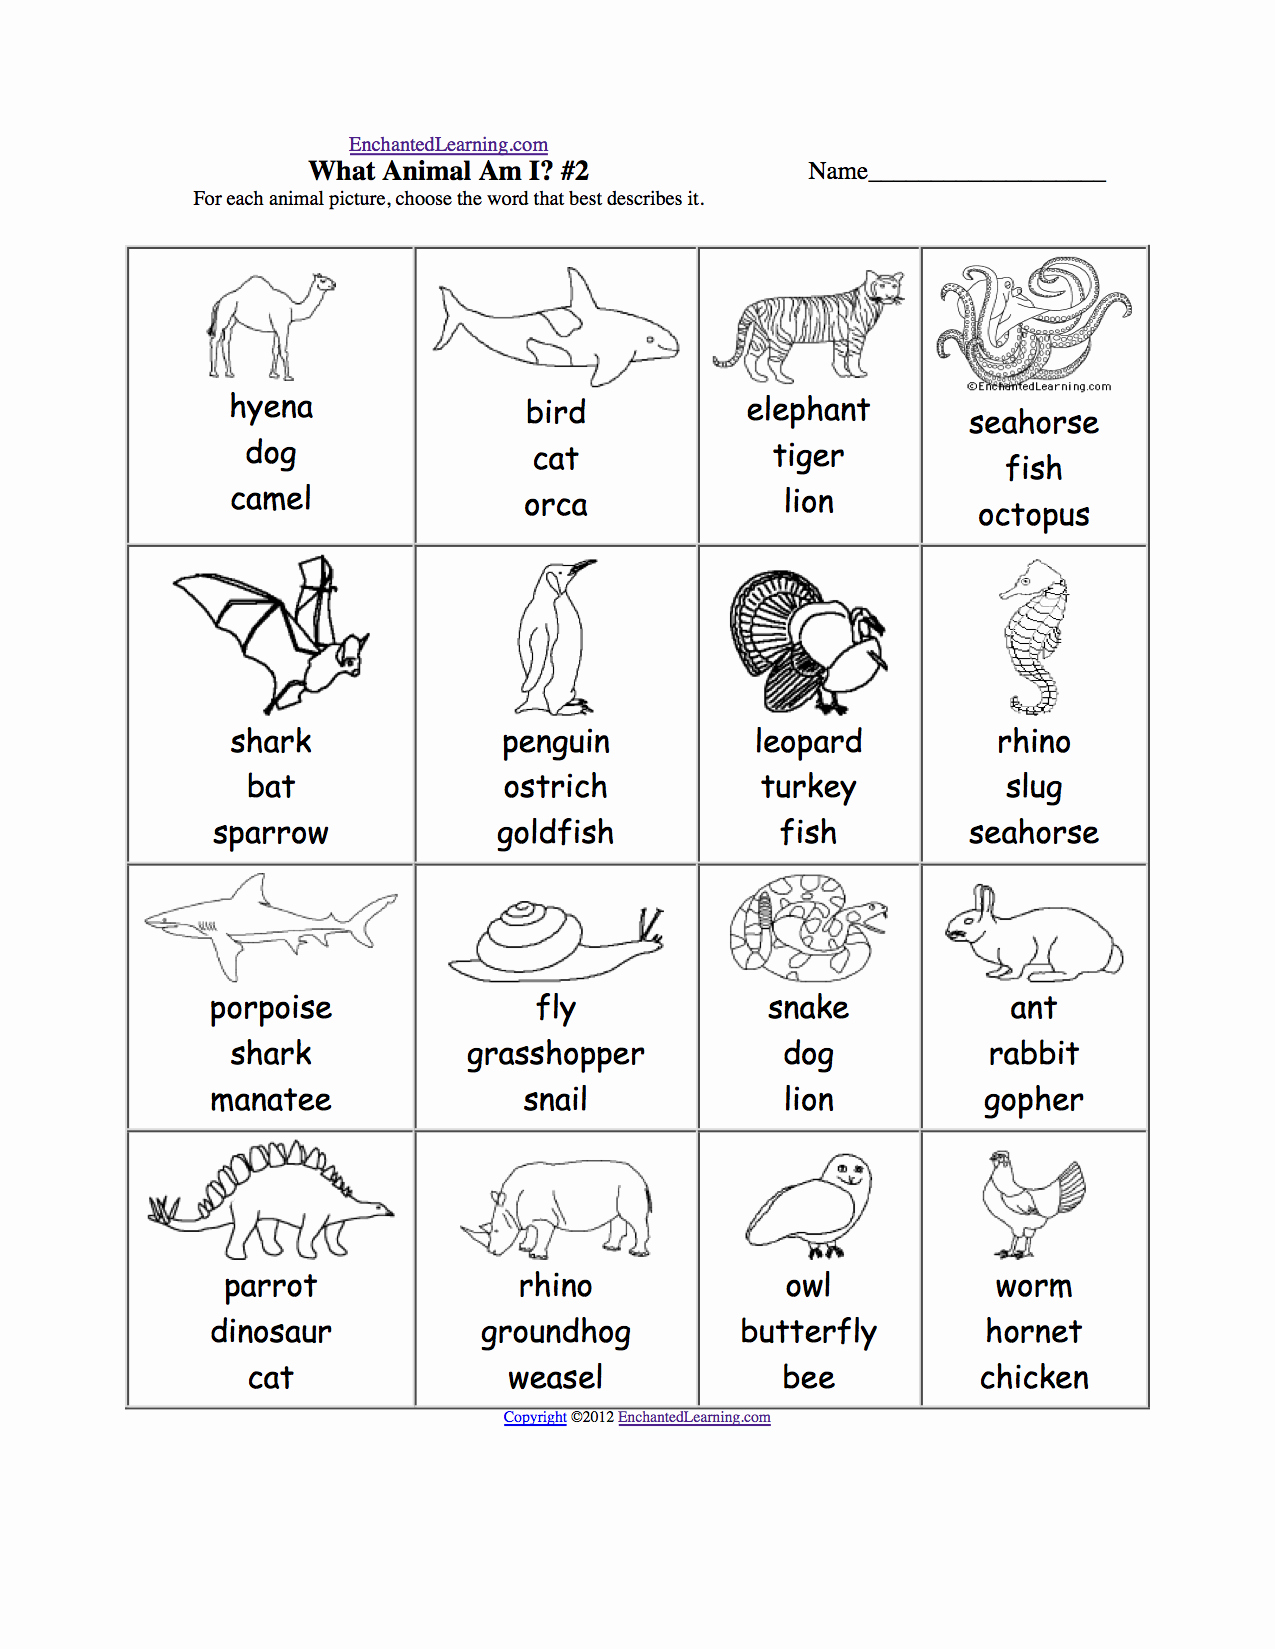 Animal Classification Worksheet Pdf Awesome What Am I Worksheet Printouts Enchantedlearning